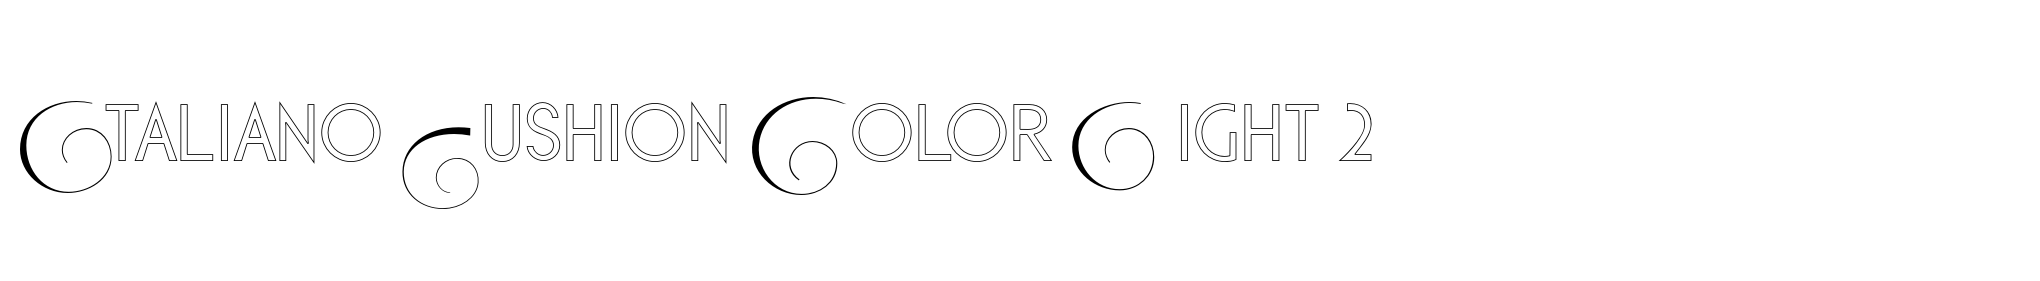 Italiano Fushion Color Light 2 image